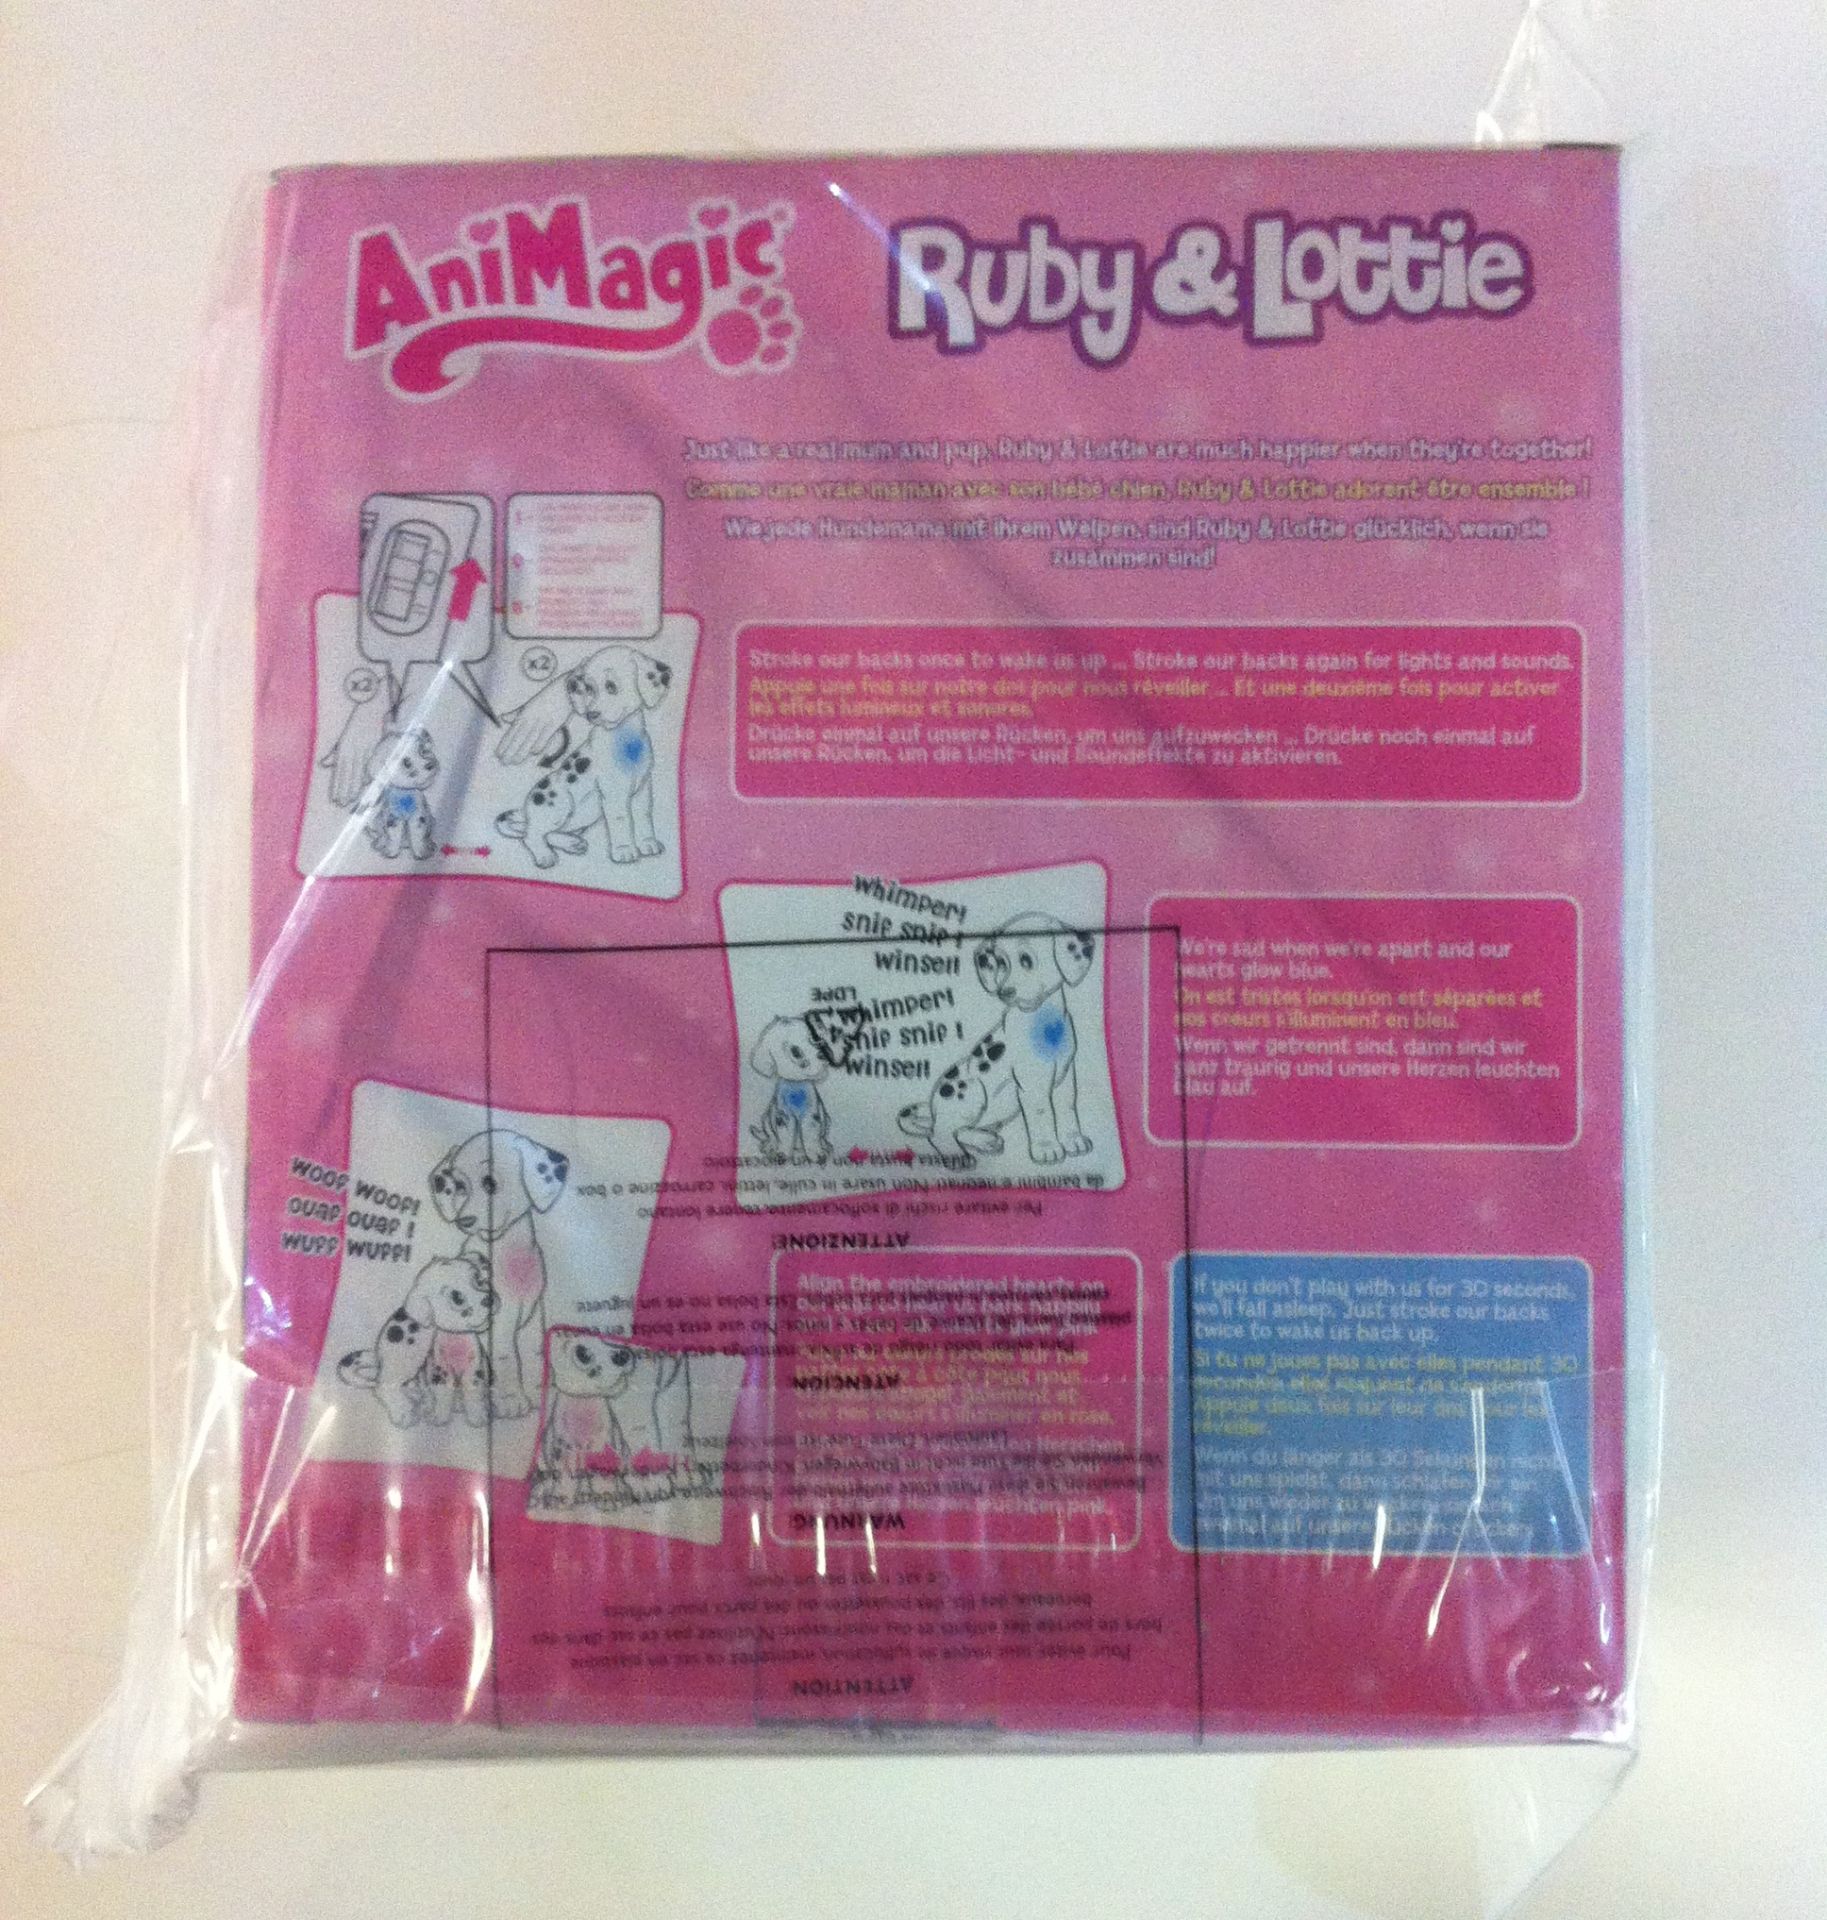 367 x Animagic Ruby & Lottie Plush Toy - Image 2 of 2